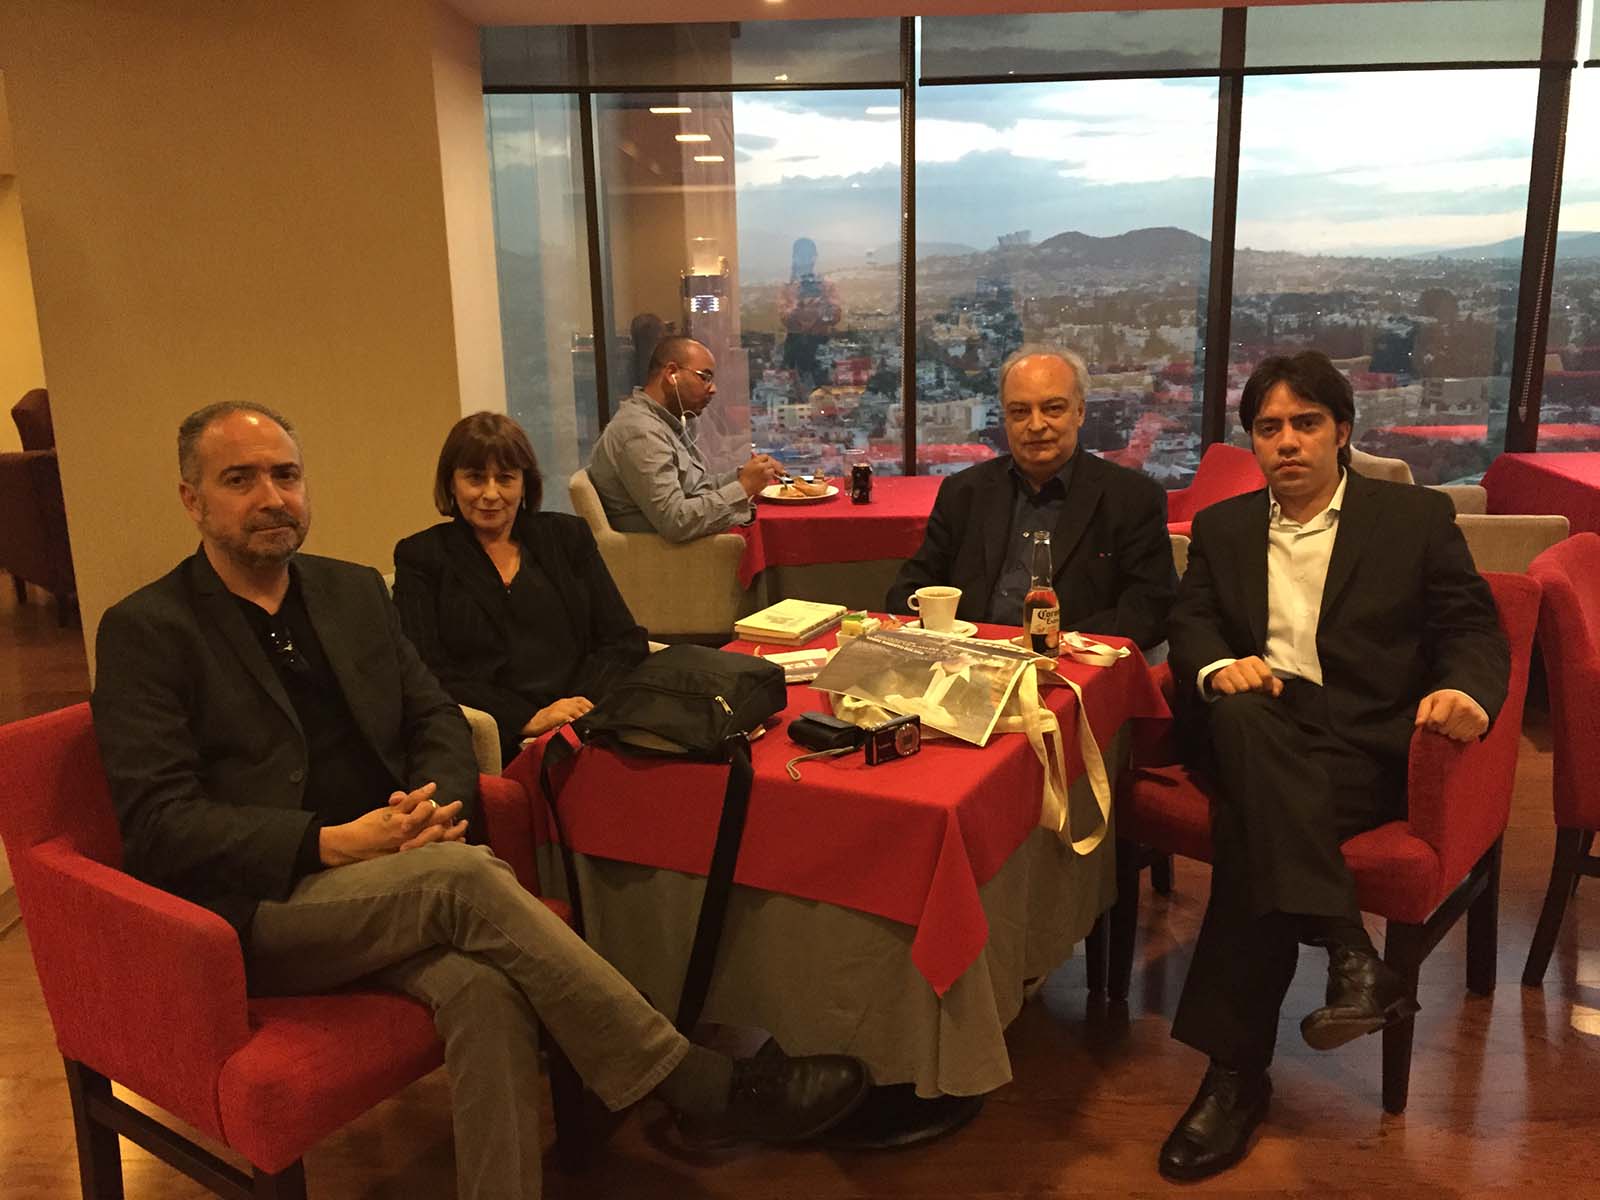 Mauricio Montiel Figueiras, Paula de Parma, Enrique Vila-Matas y Alejandro García Abreu en el Hotel Hilton Guadalajara, después de la entrega del Premio FIL de Literatura
en Lenguas Romances